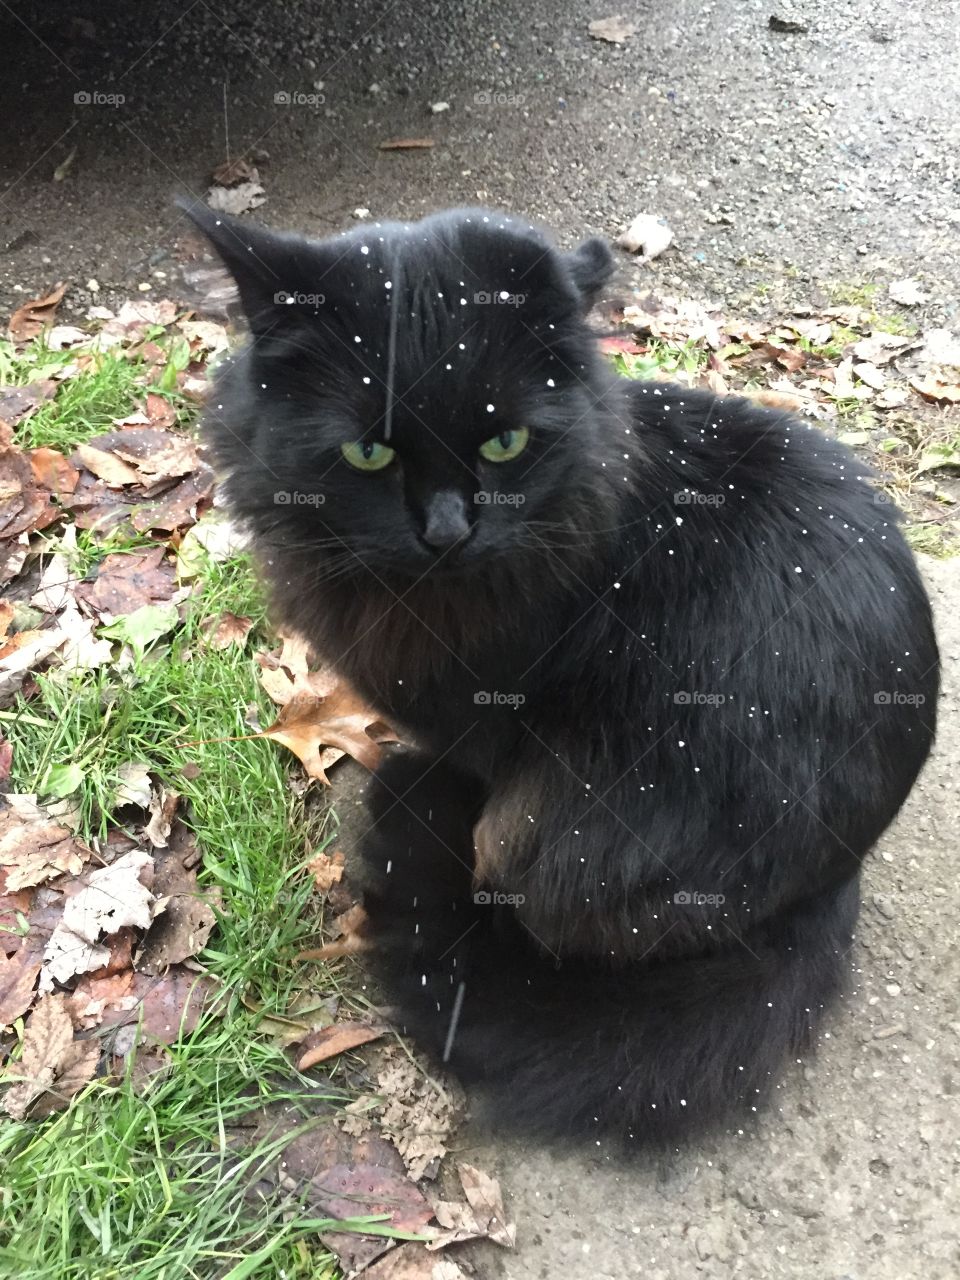 Snowy kit kat....